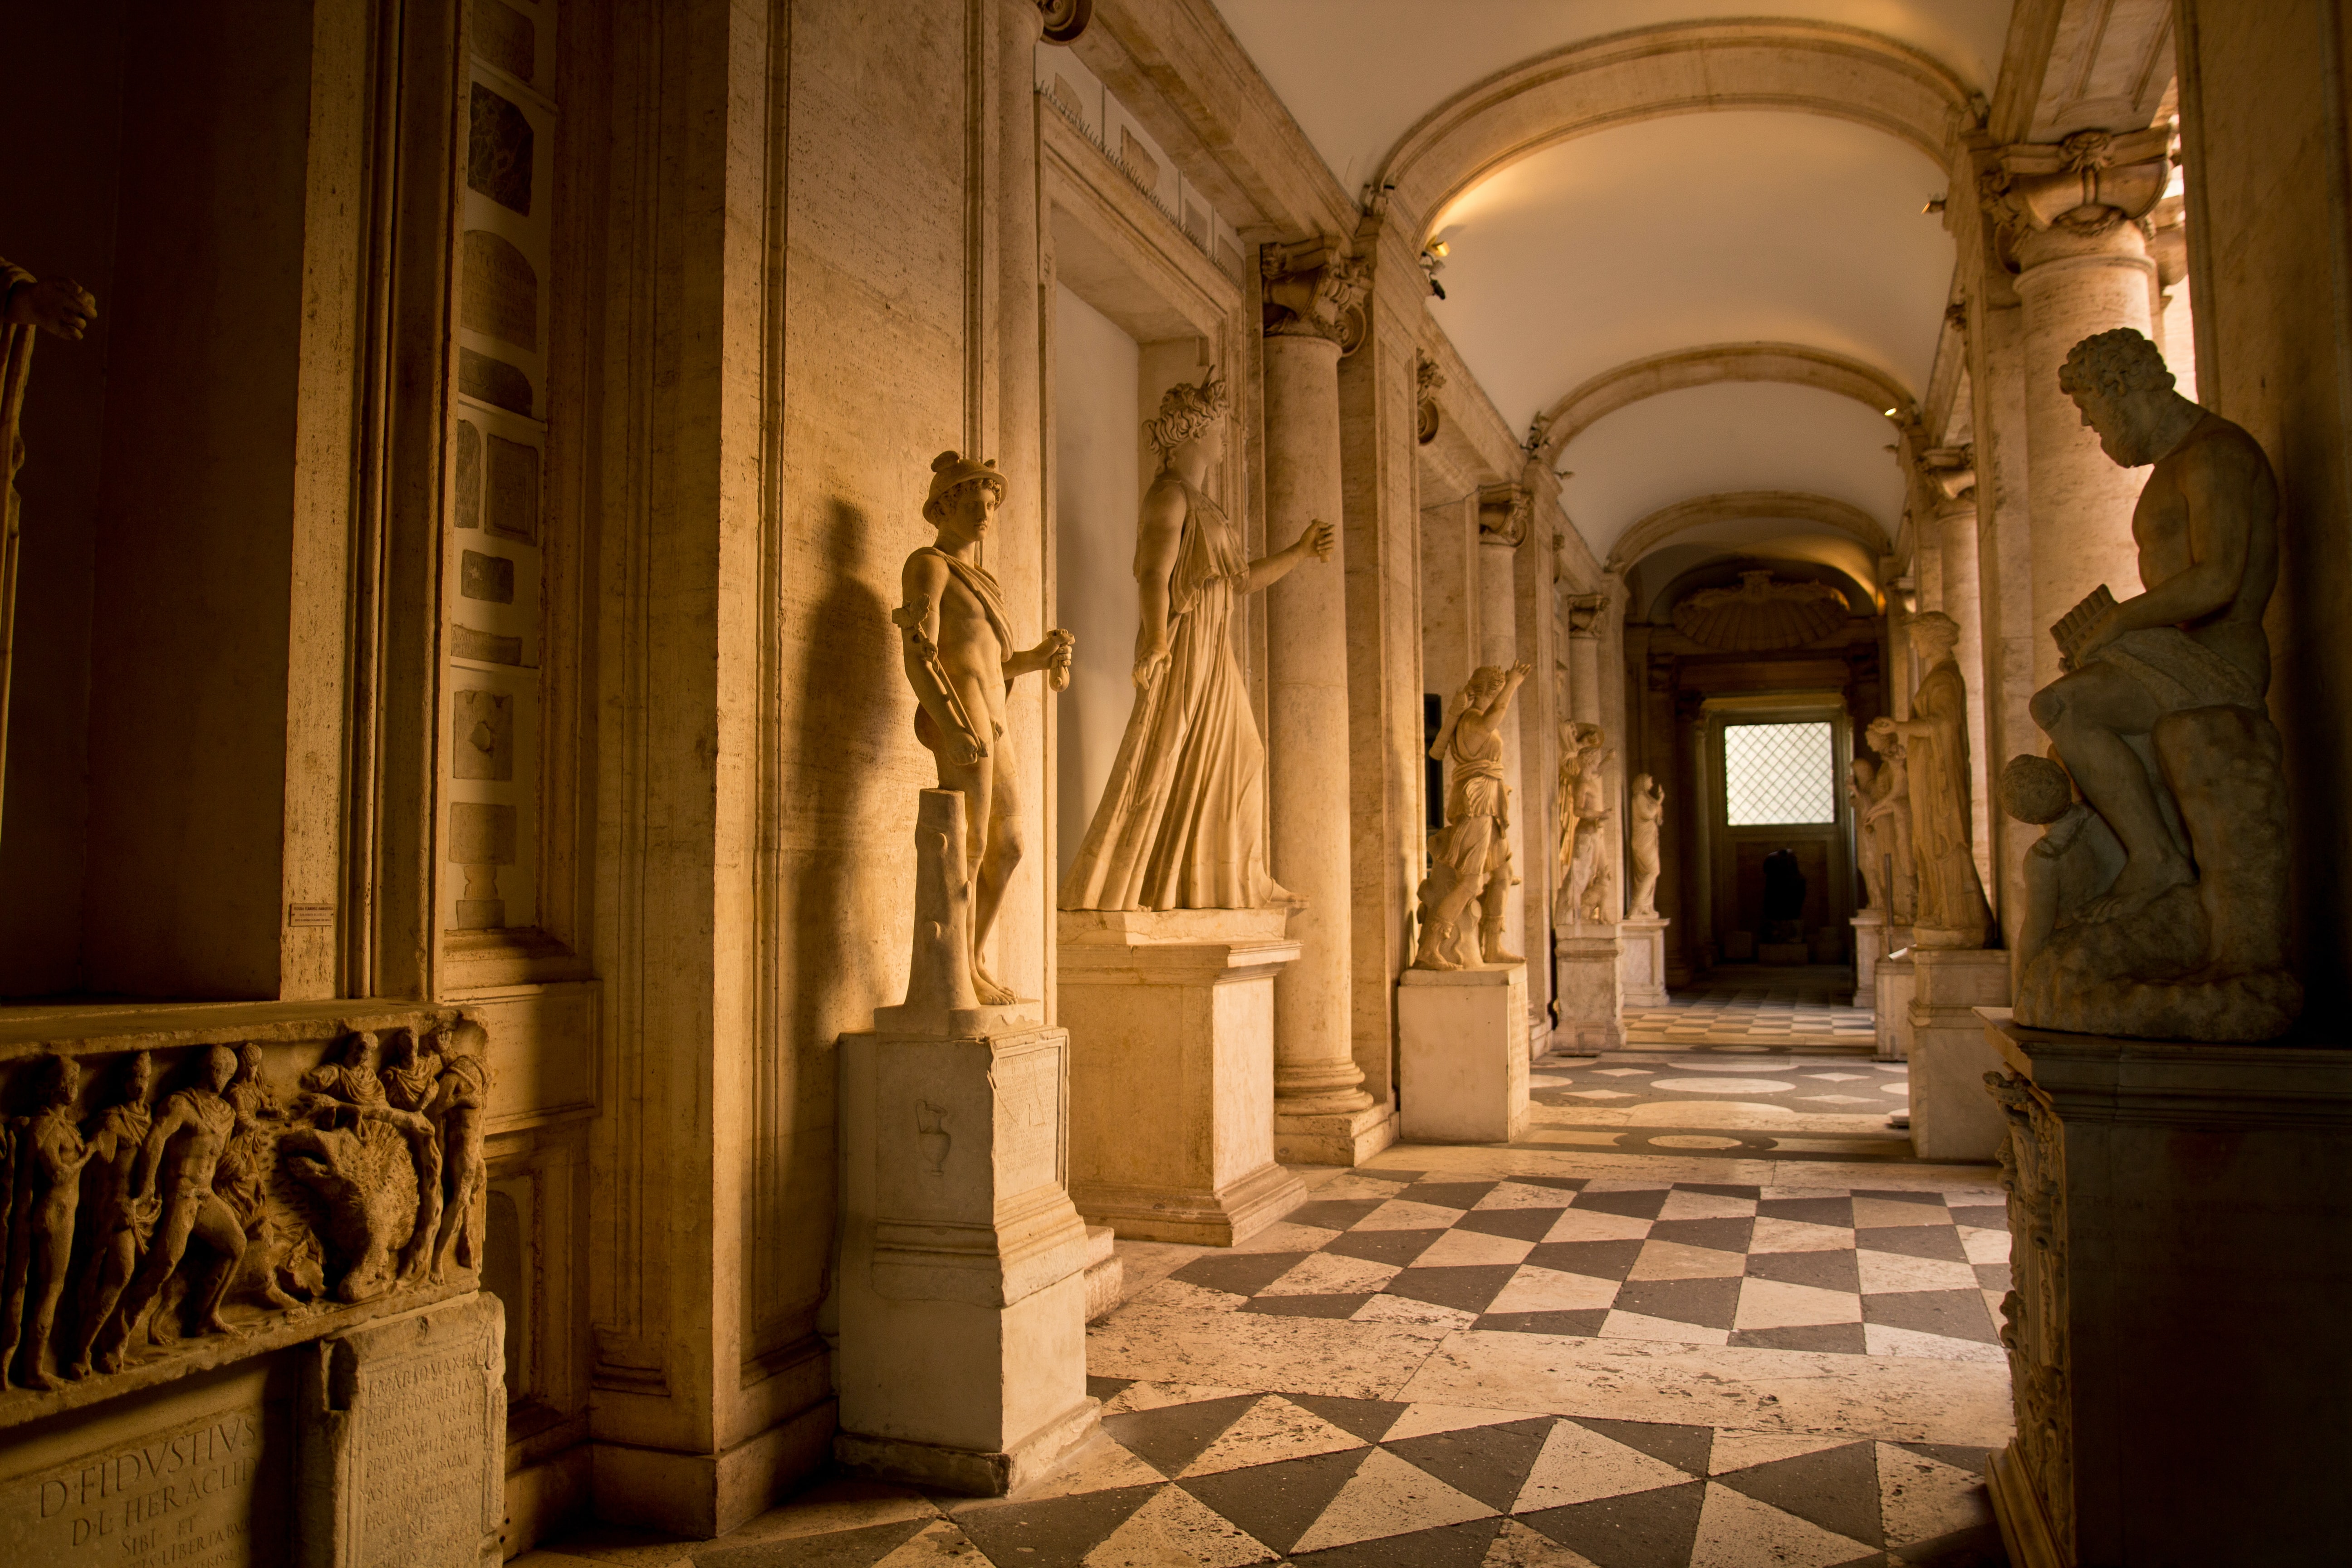 카피톨리노 박물관에서 조각상들이 나란히 서있는 모습